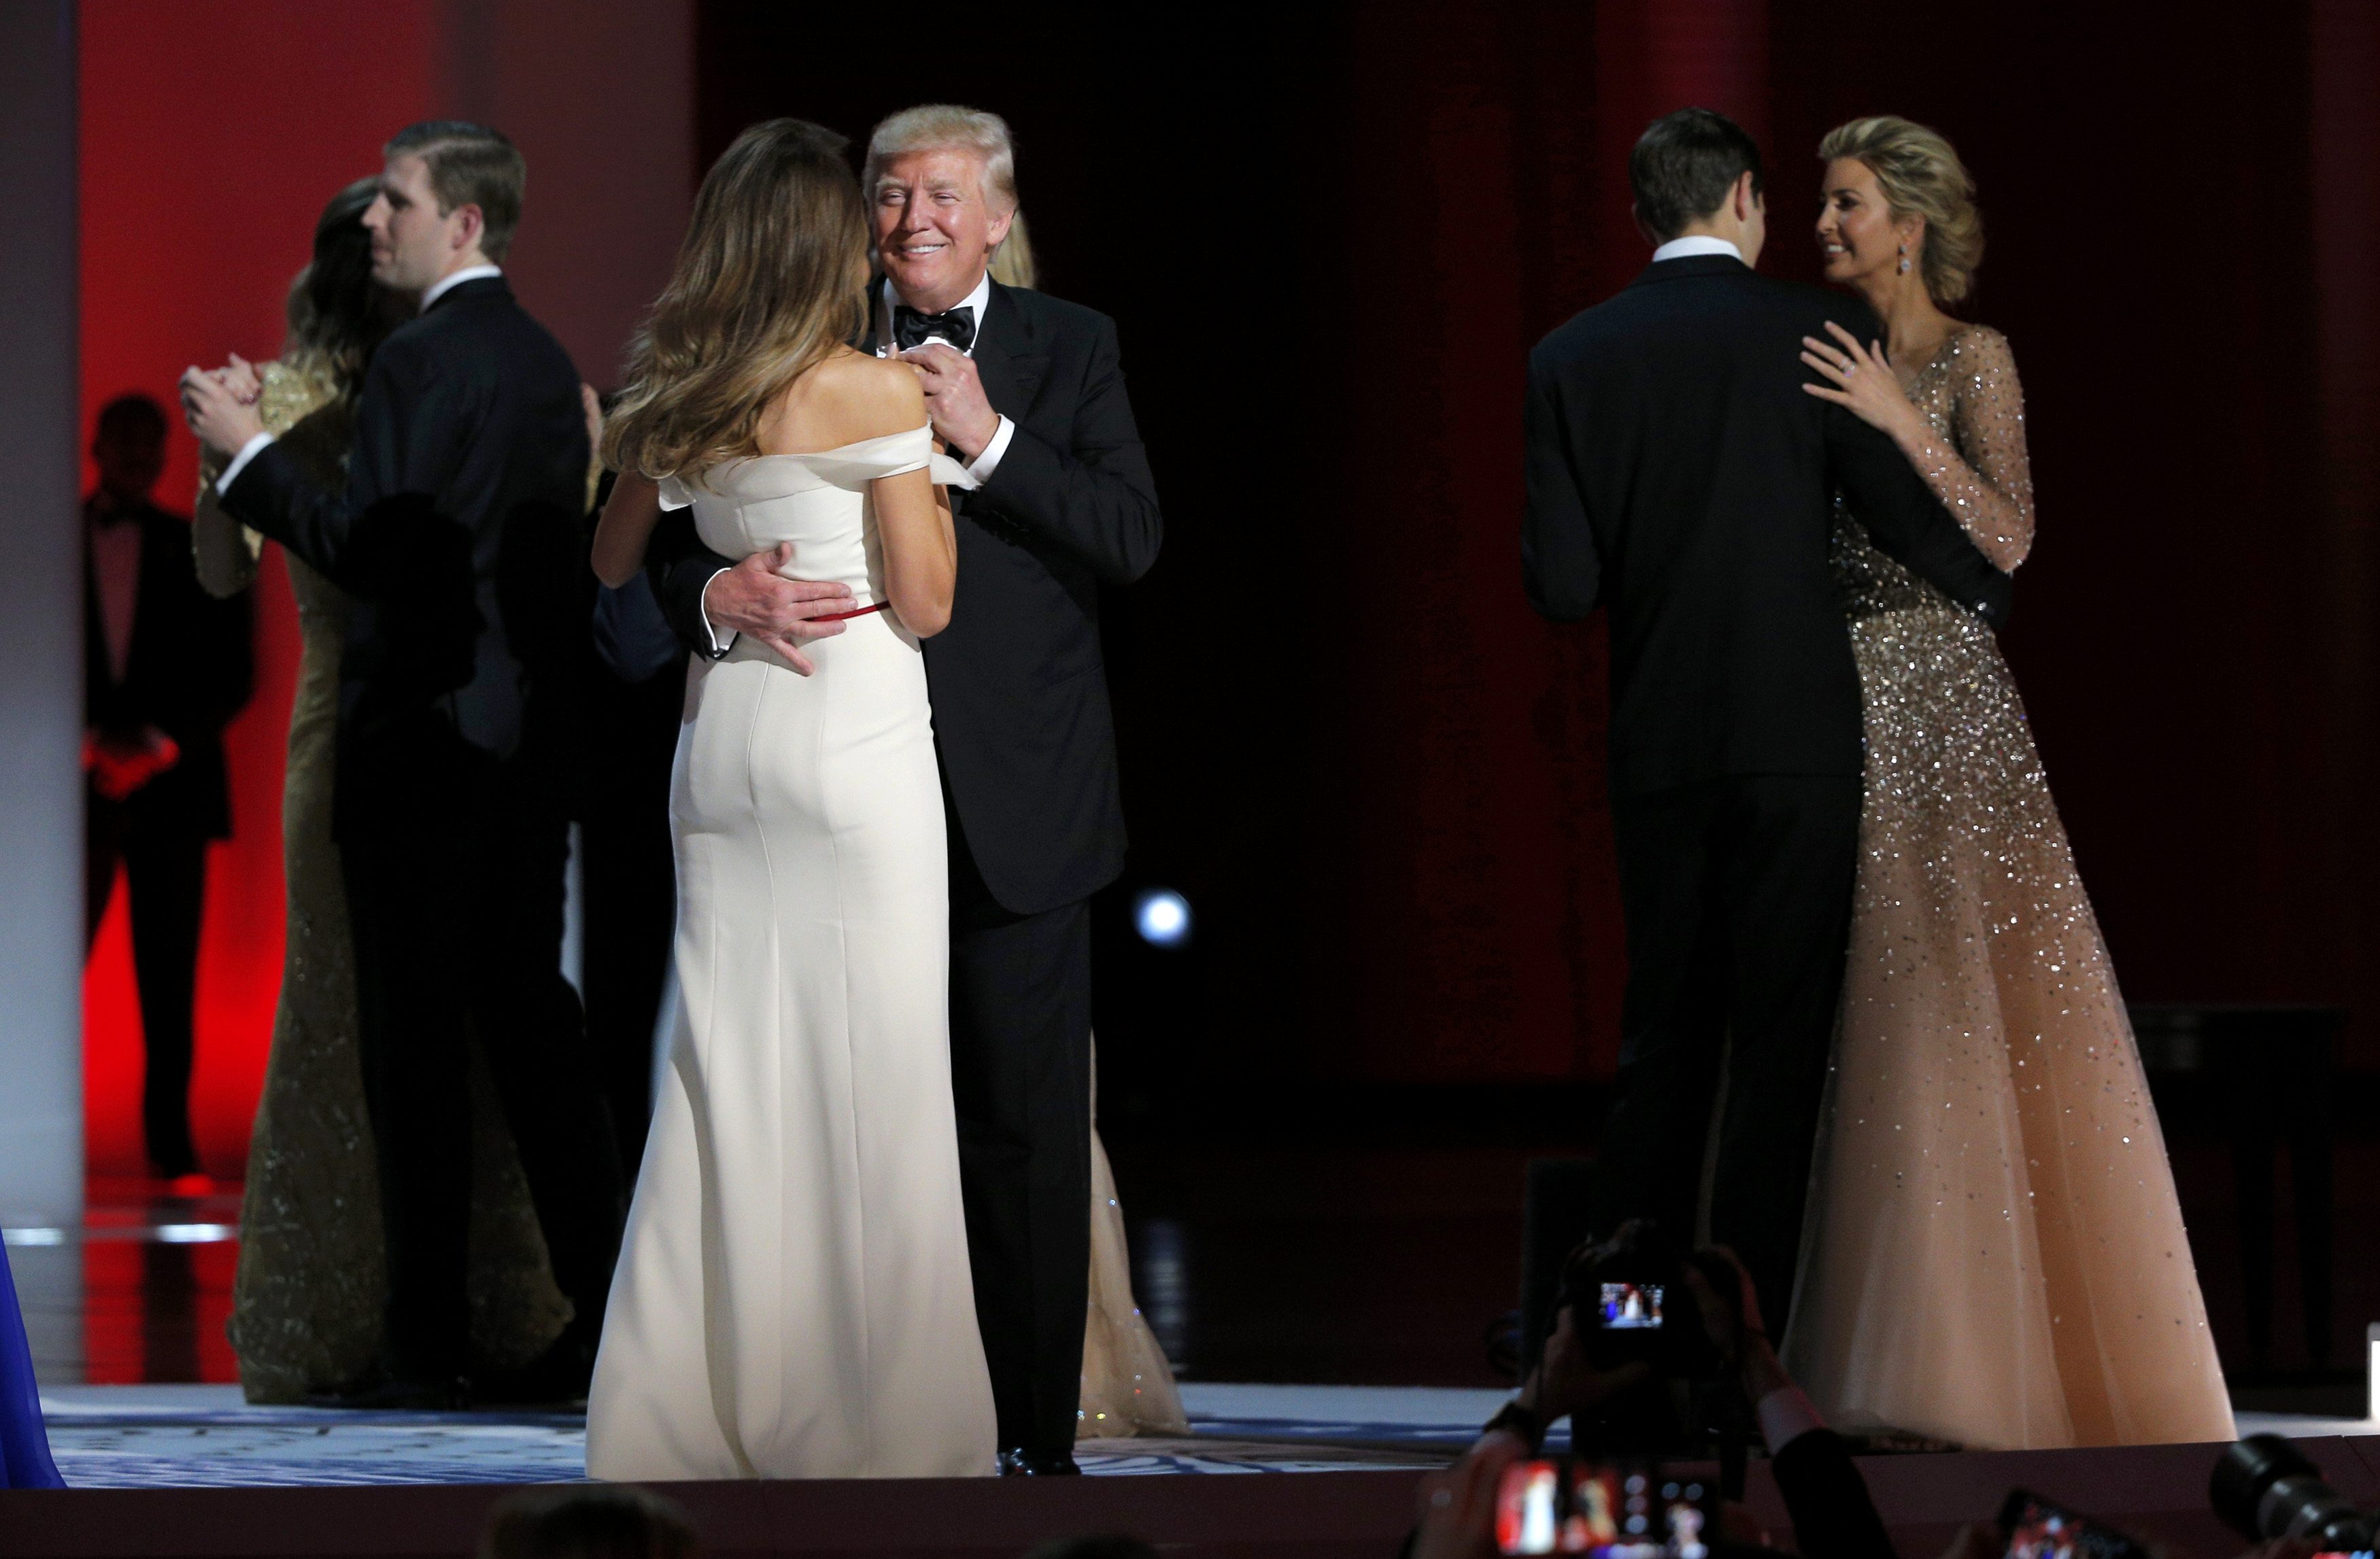 ترامب يحتفل بتنصيبه بالرقص مع زوجته